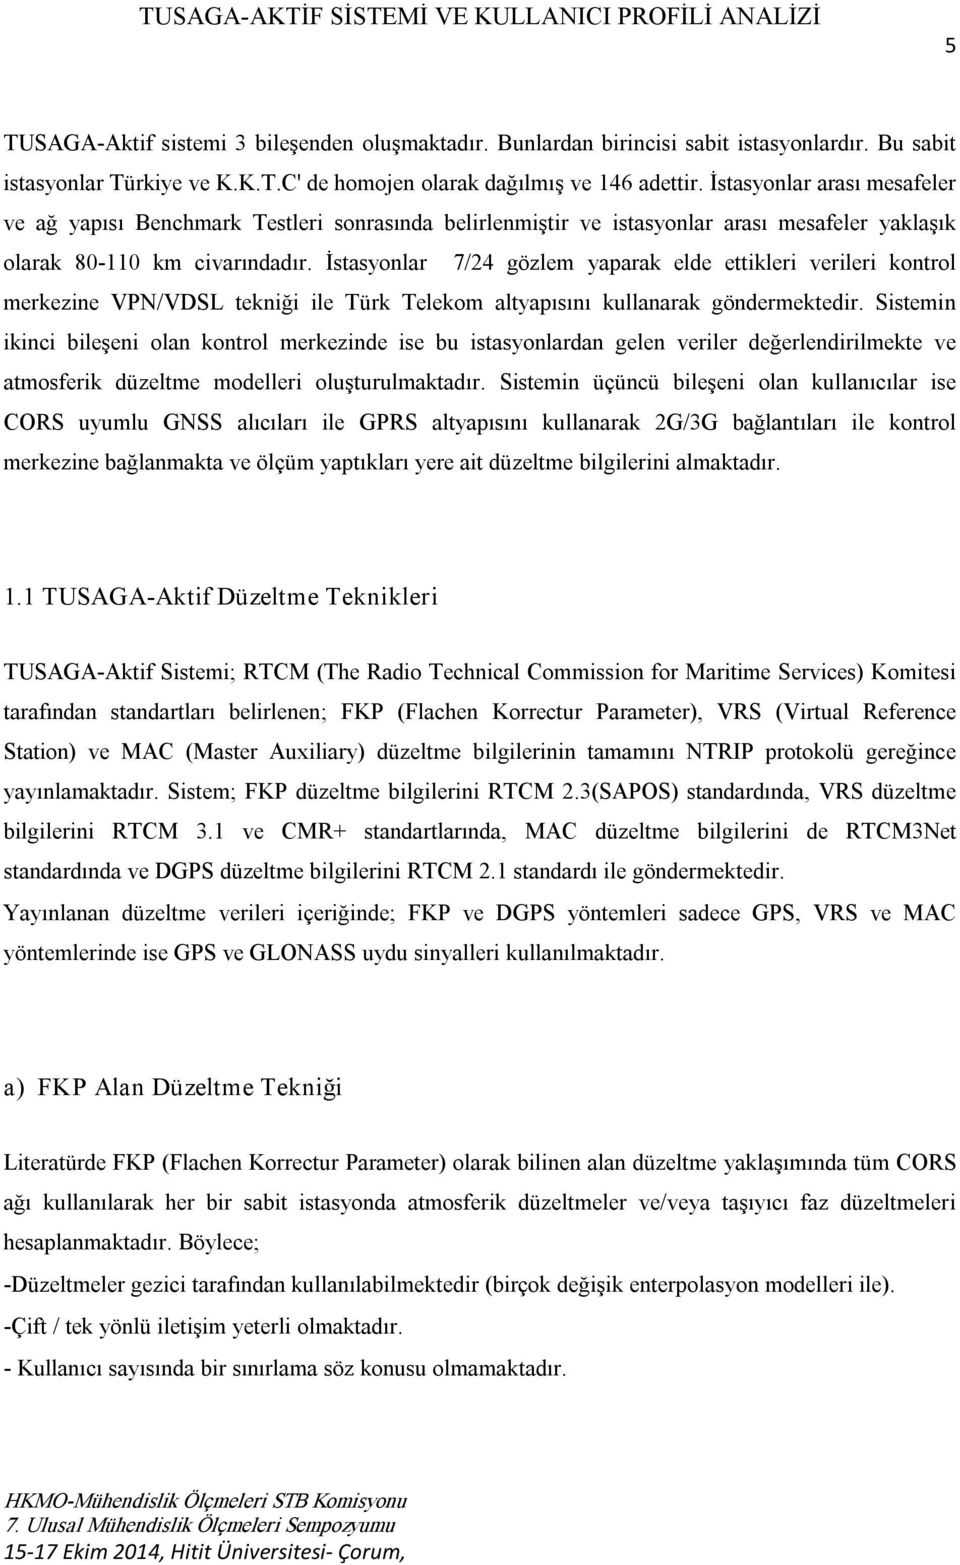 İstasyonlar 7/24 gözlem yaparak elde ettikleri verileri kontrol merkezine VPN/VDSL tekniği ile Türk Telekom altyapısını kullanarak göndermektedir.